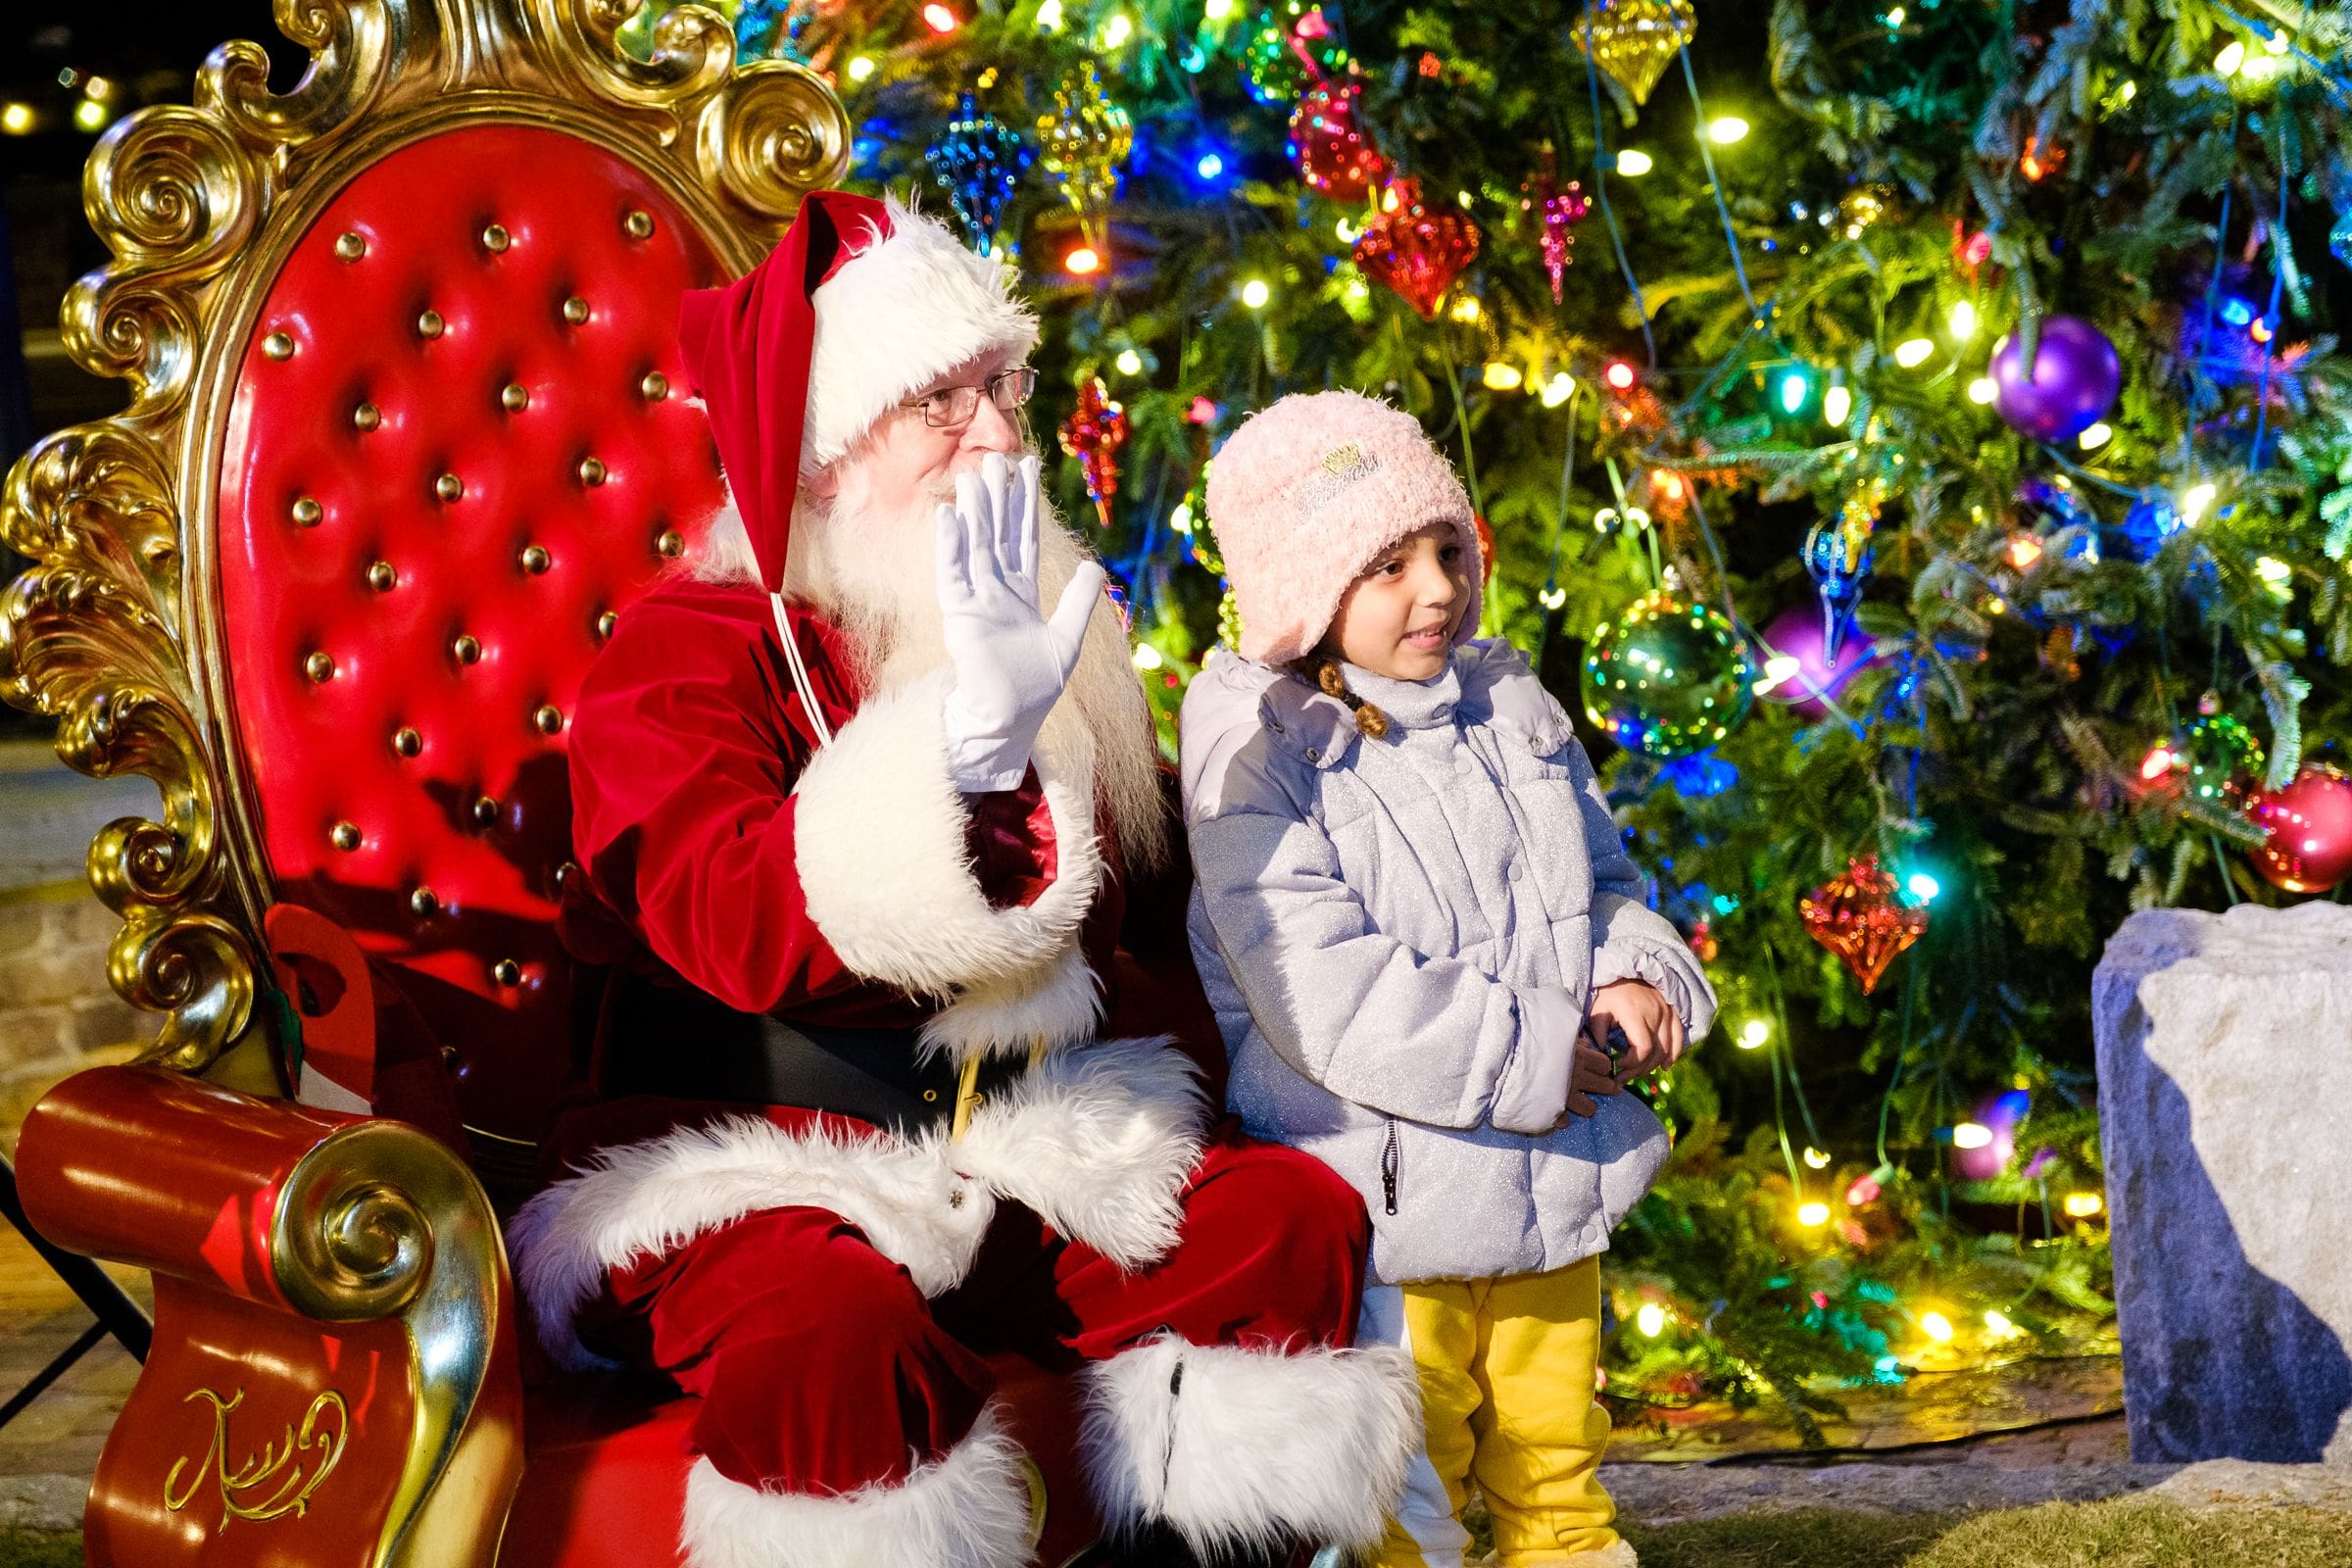 A young girl sits with Santa at the Savannah Christmas Market.